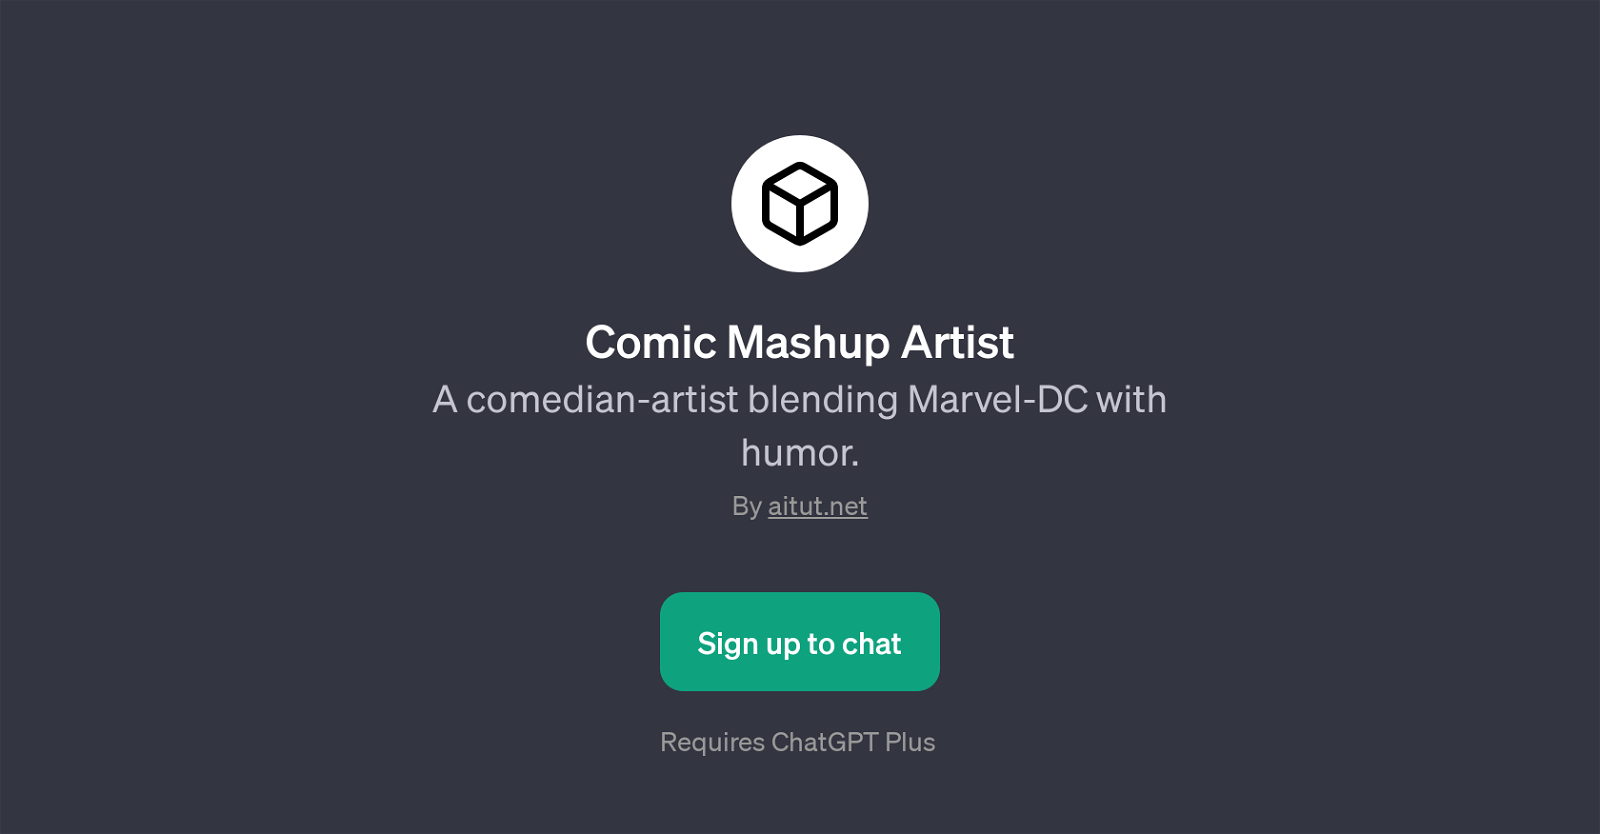 Comic Mashup Artist website